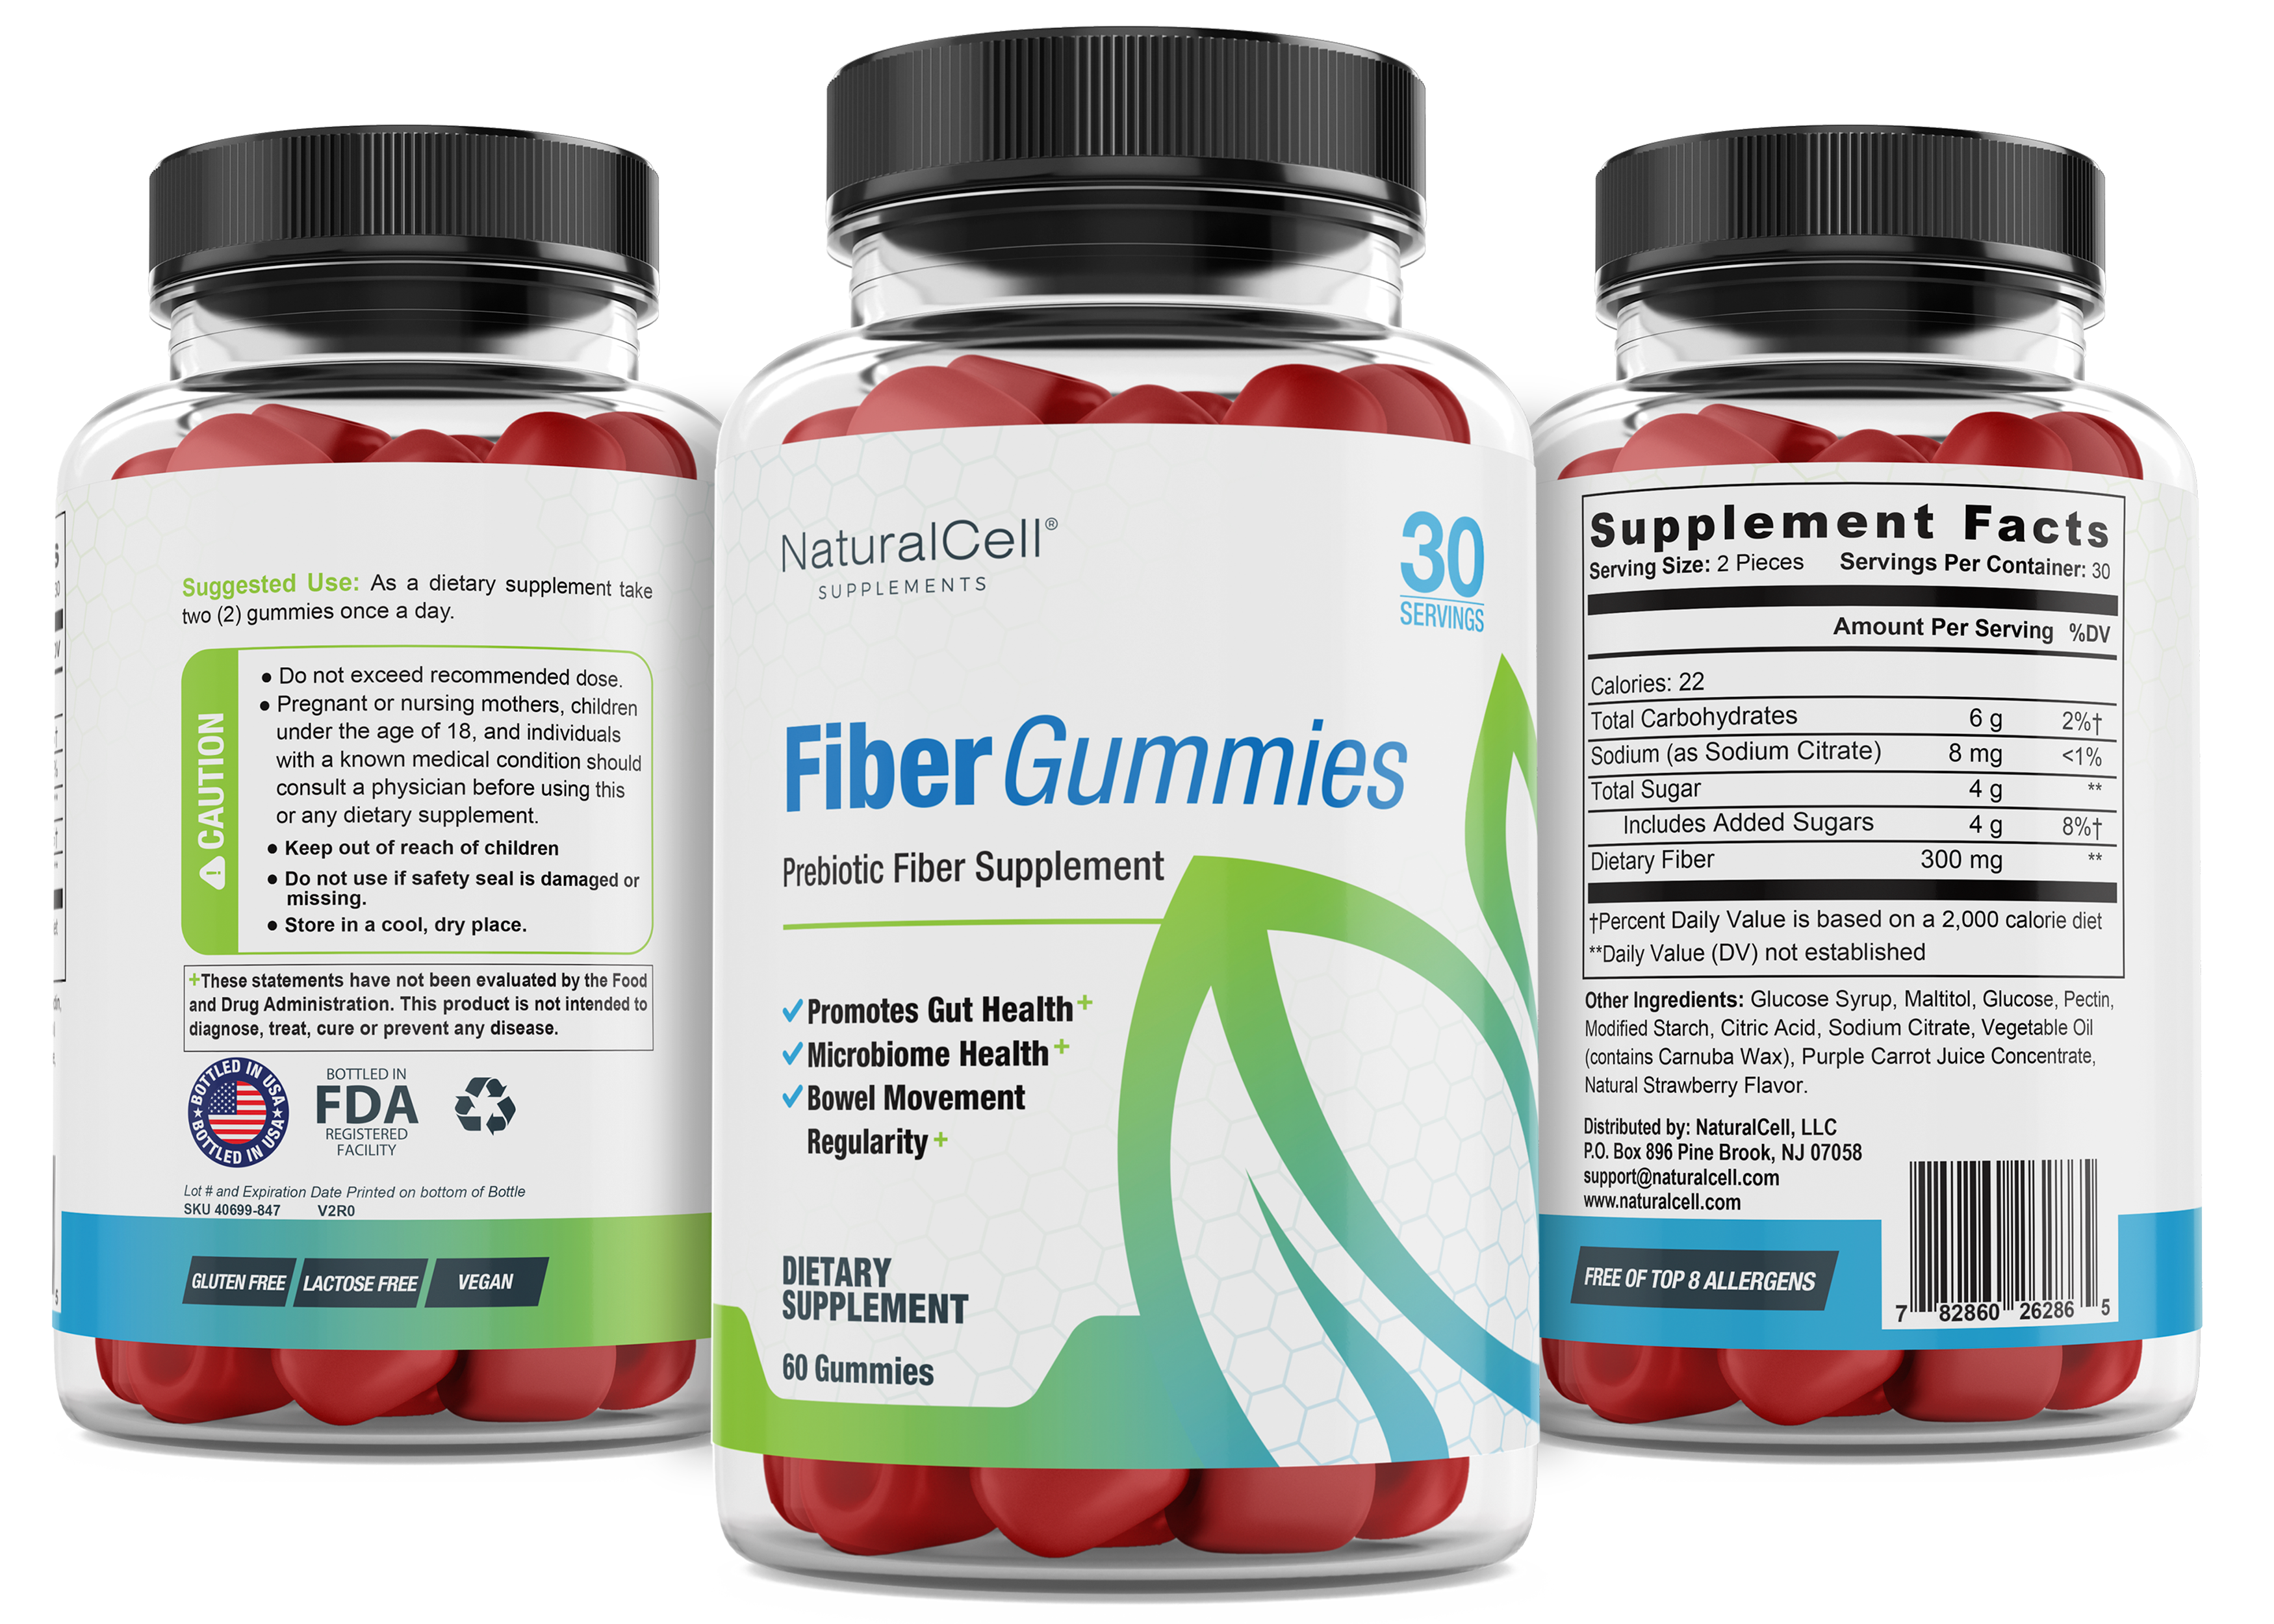 Fiber Gummies - Prebiotic Fiber Supplement